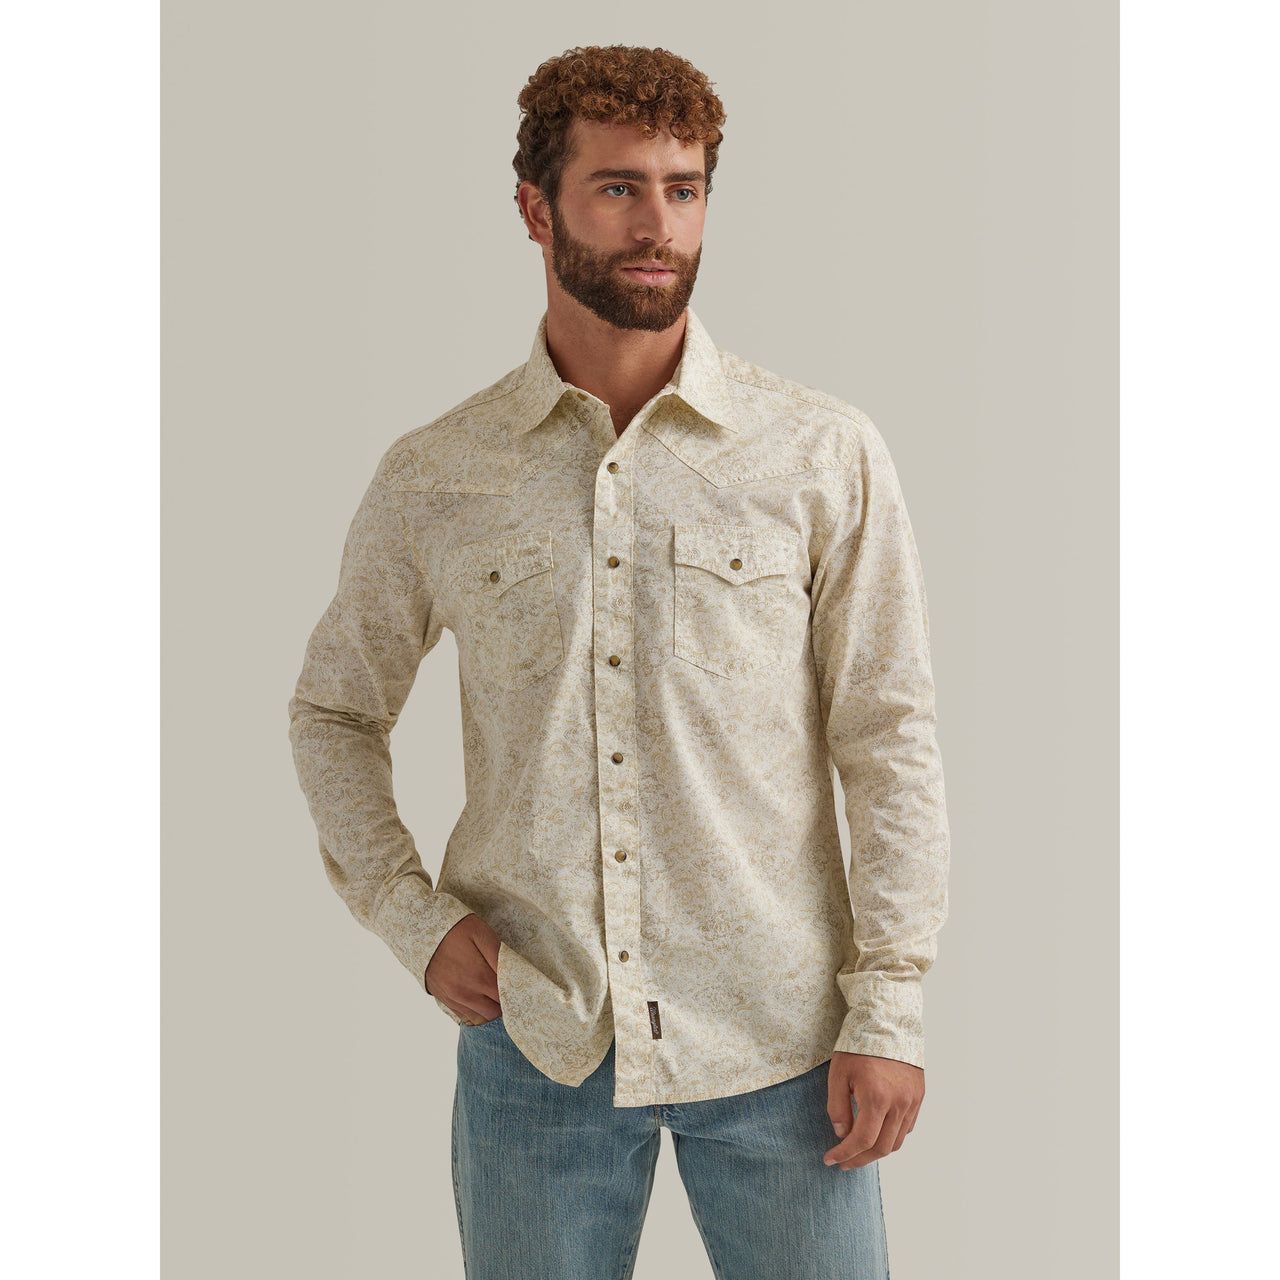 Wrangler Men's Retro Premium Long Sleeve Snap Shirt - Beige